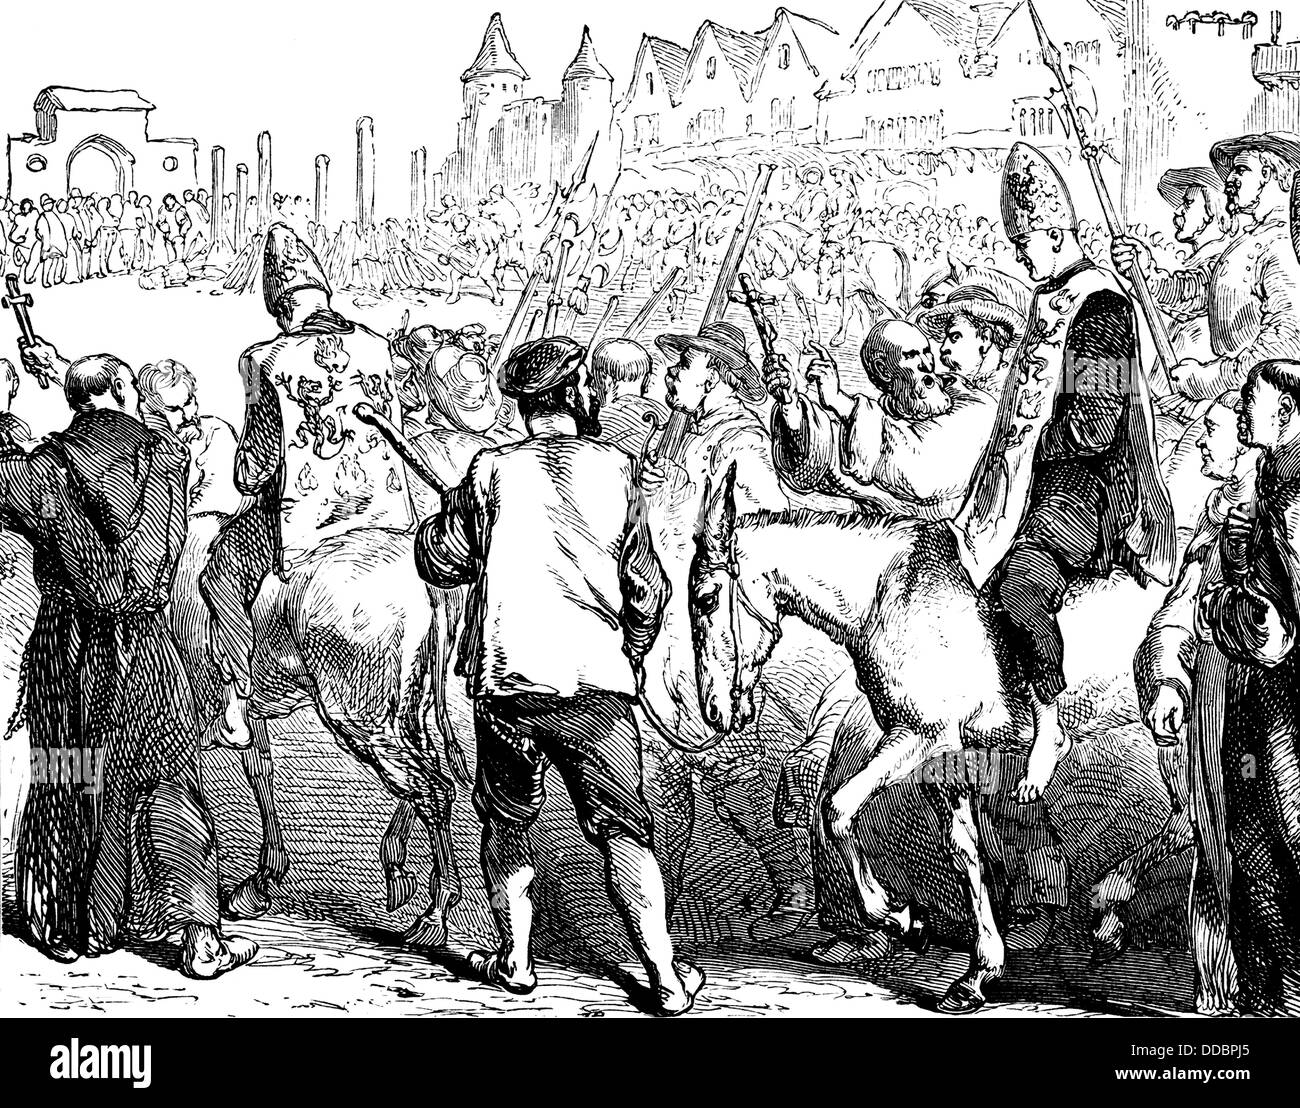 Un auto-da-fé, le rituel de la pénitence publique, la répression de l'Inquisition, l'exécution par les autorités civiles, 16e siècle Banque D'Images